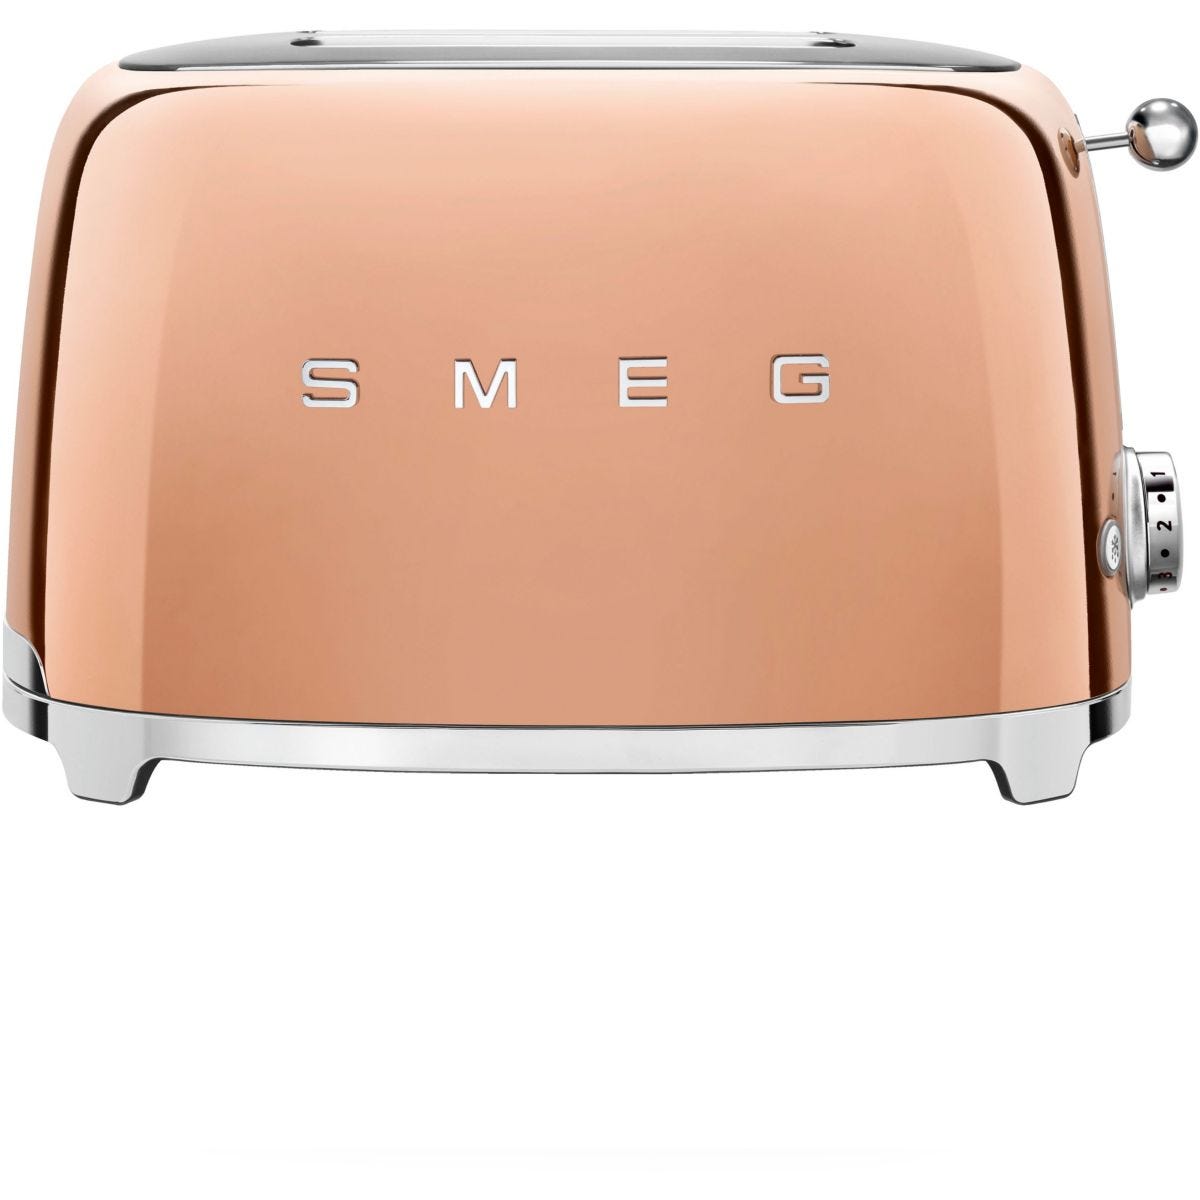 Grille pain SMEG rose (Occasion avec défaut)